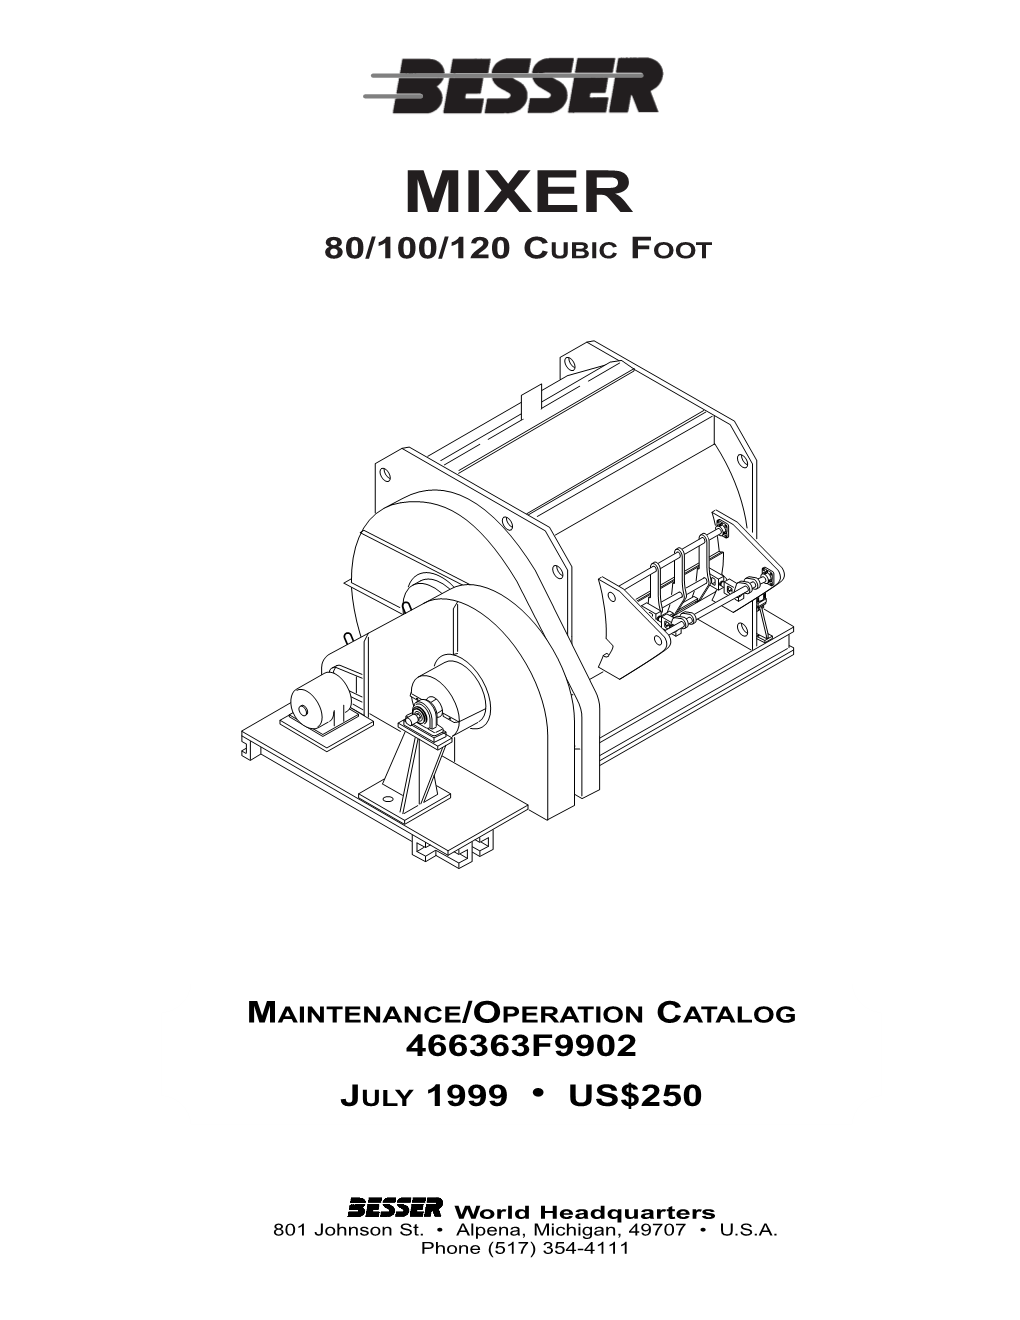 Mixer 80/100/120 Cubic Foot